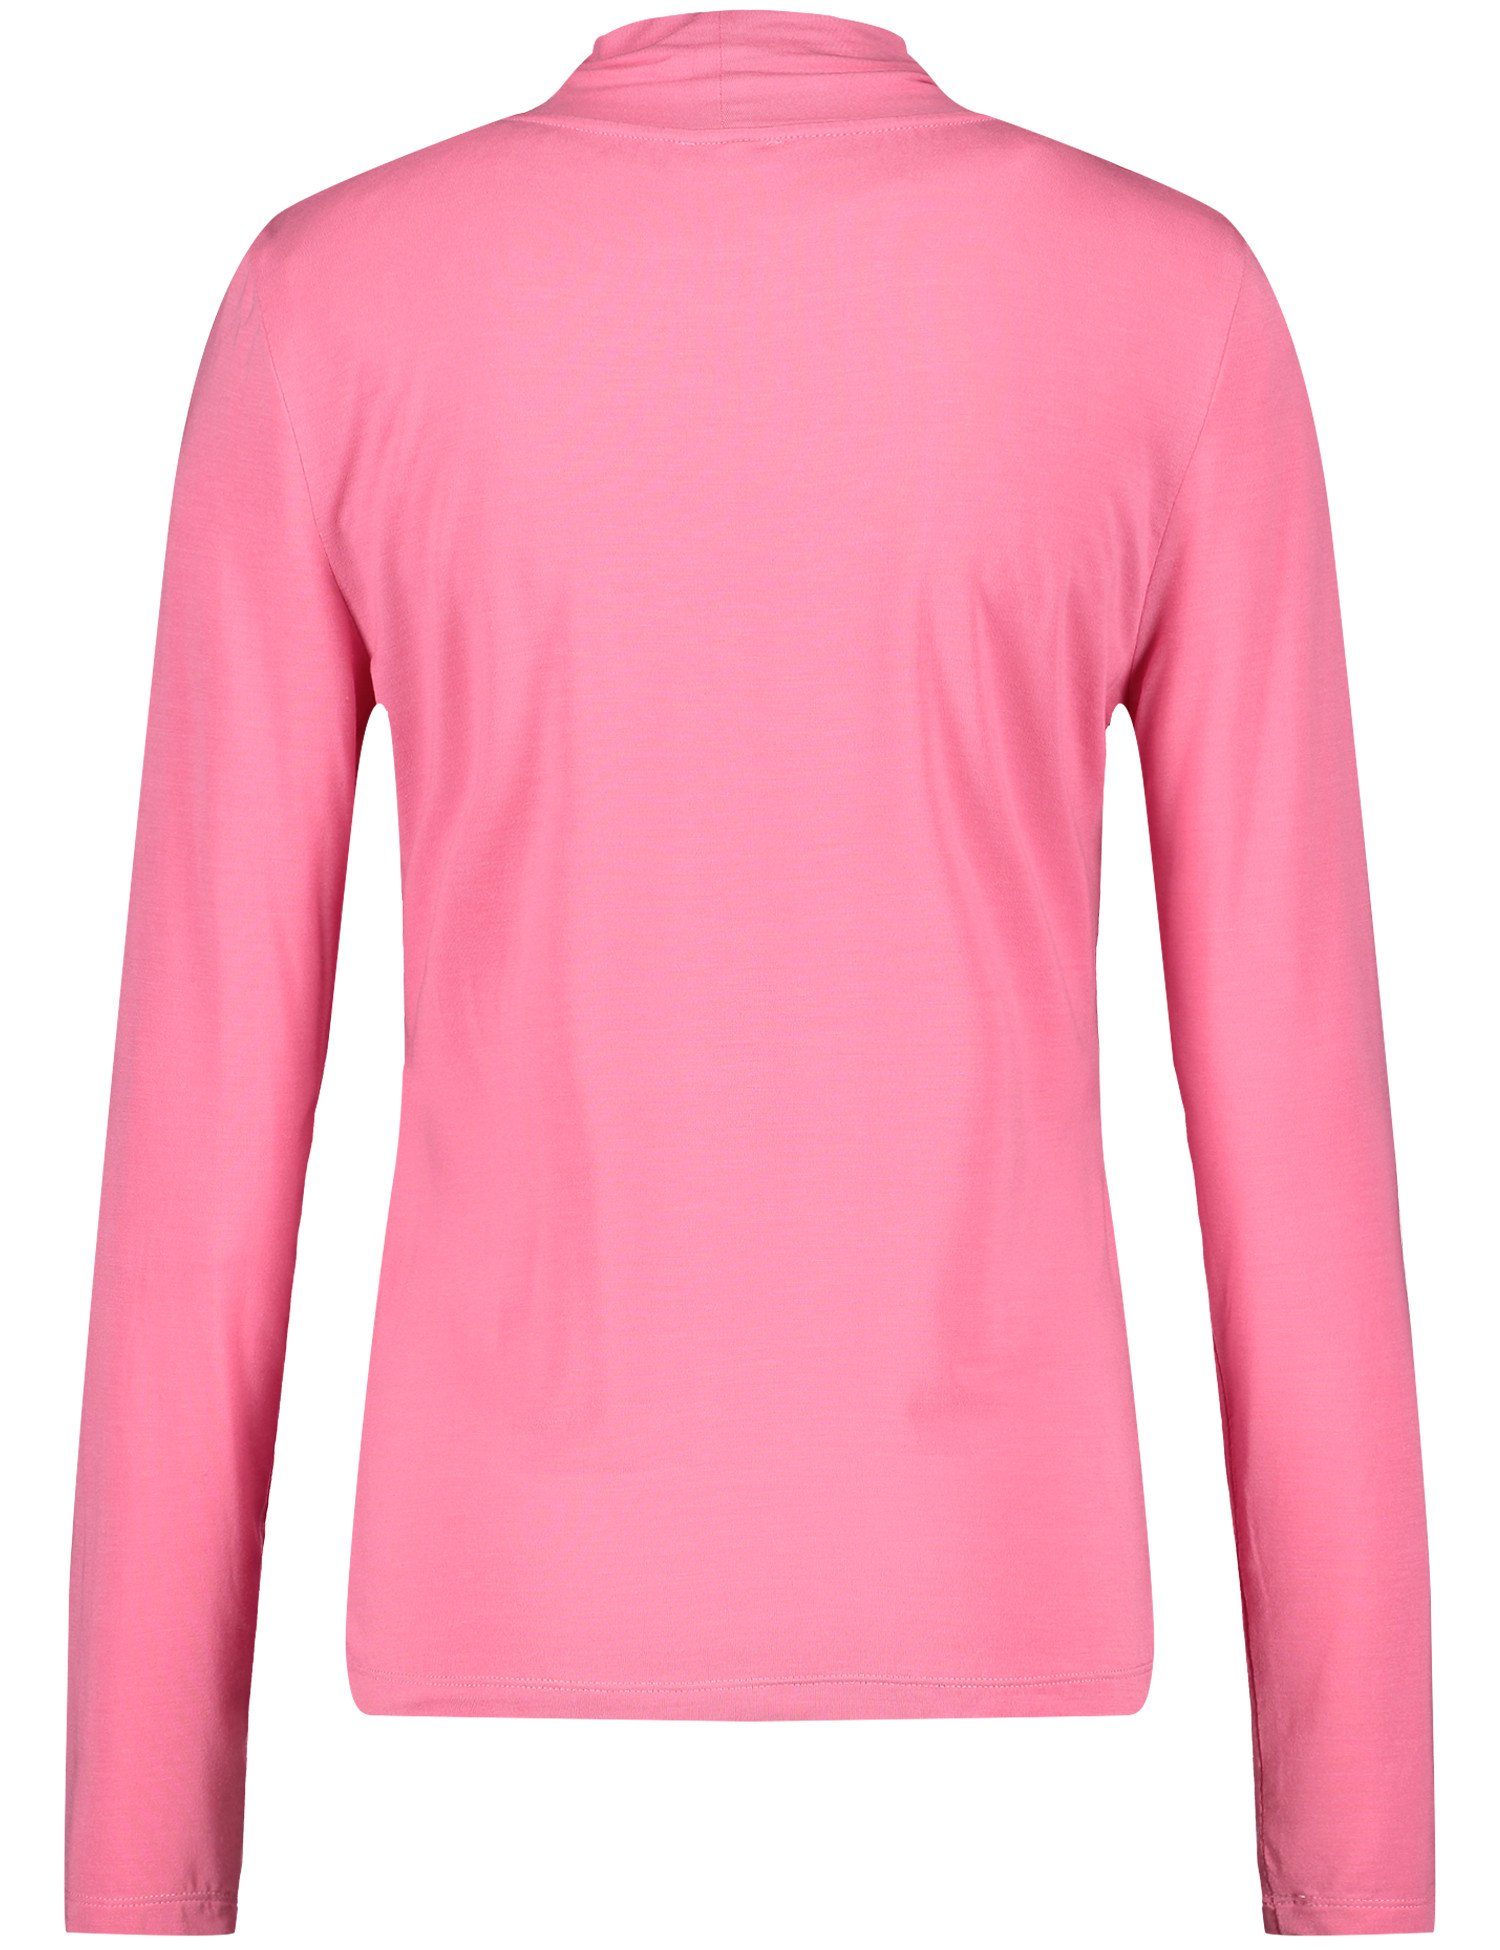 ROSE WEBER 30894 T-Shirt GERRY PINK